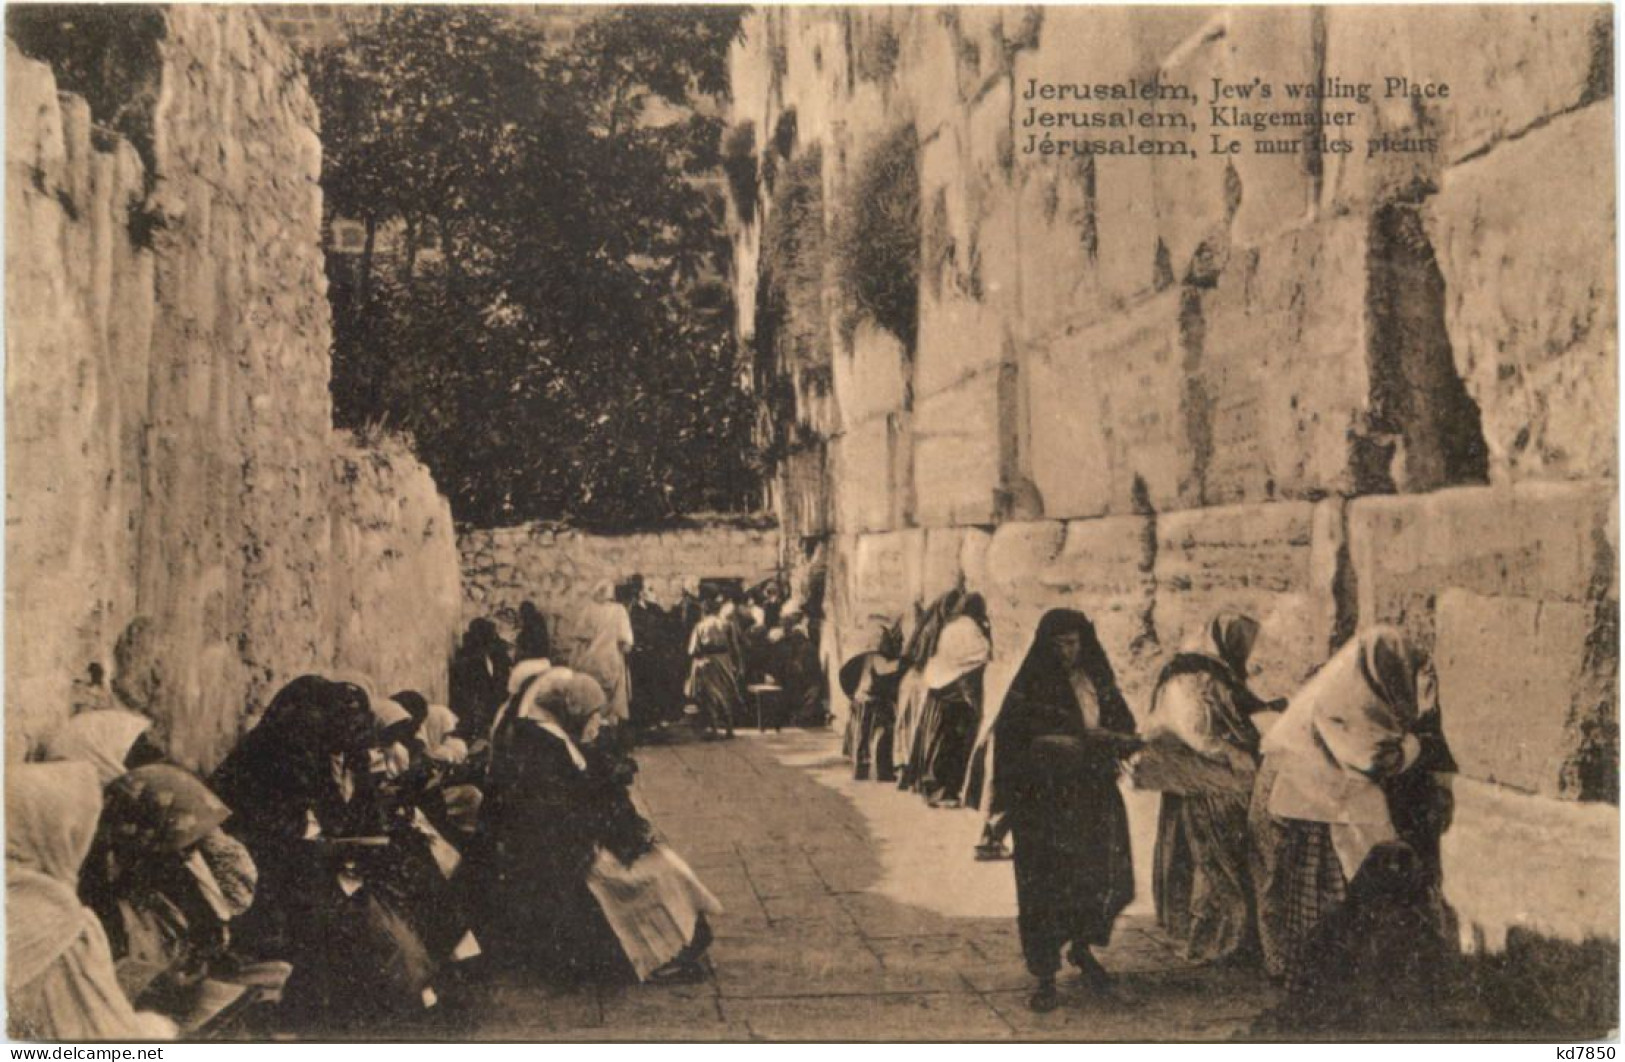 Jerusalem - Jews Willing Place - Judaika - Palästina